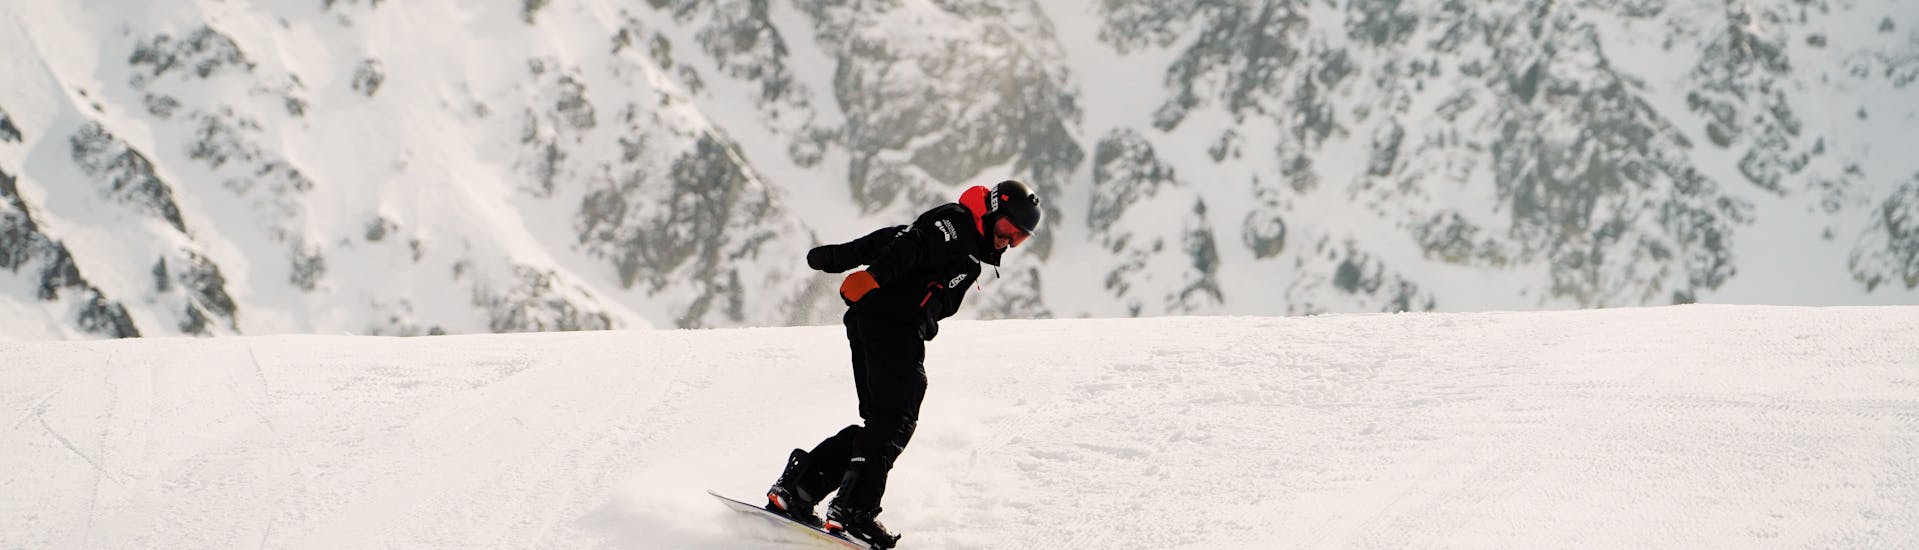 Privater Snowboardkurs für alle Levels & Altersgruppen.